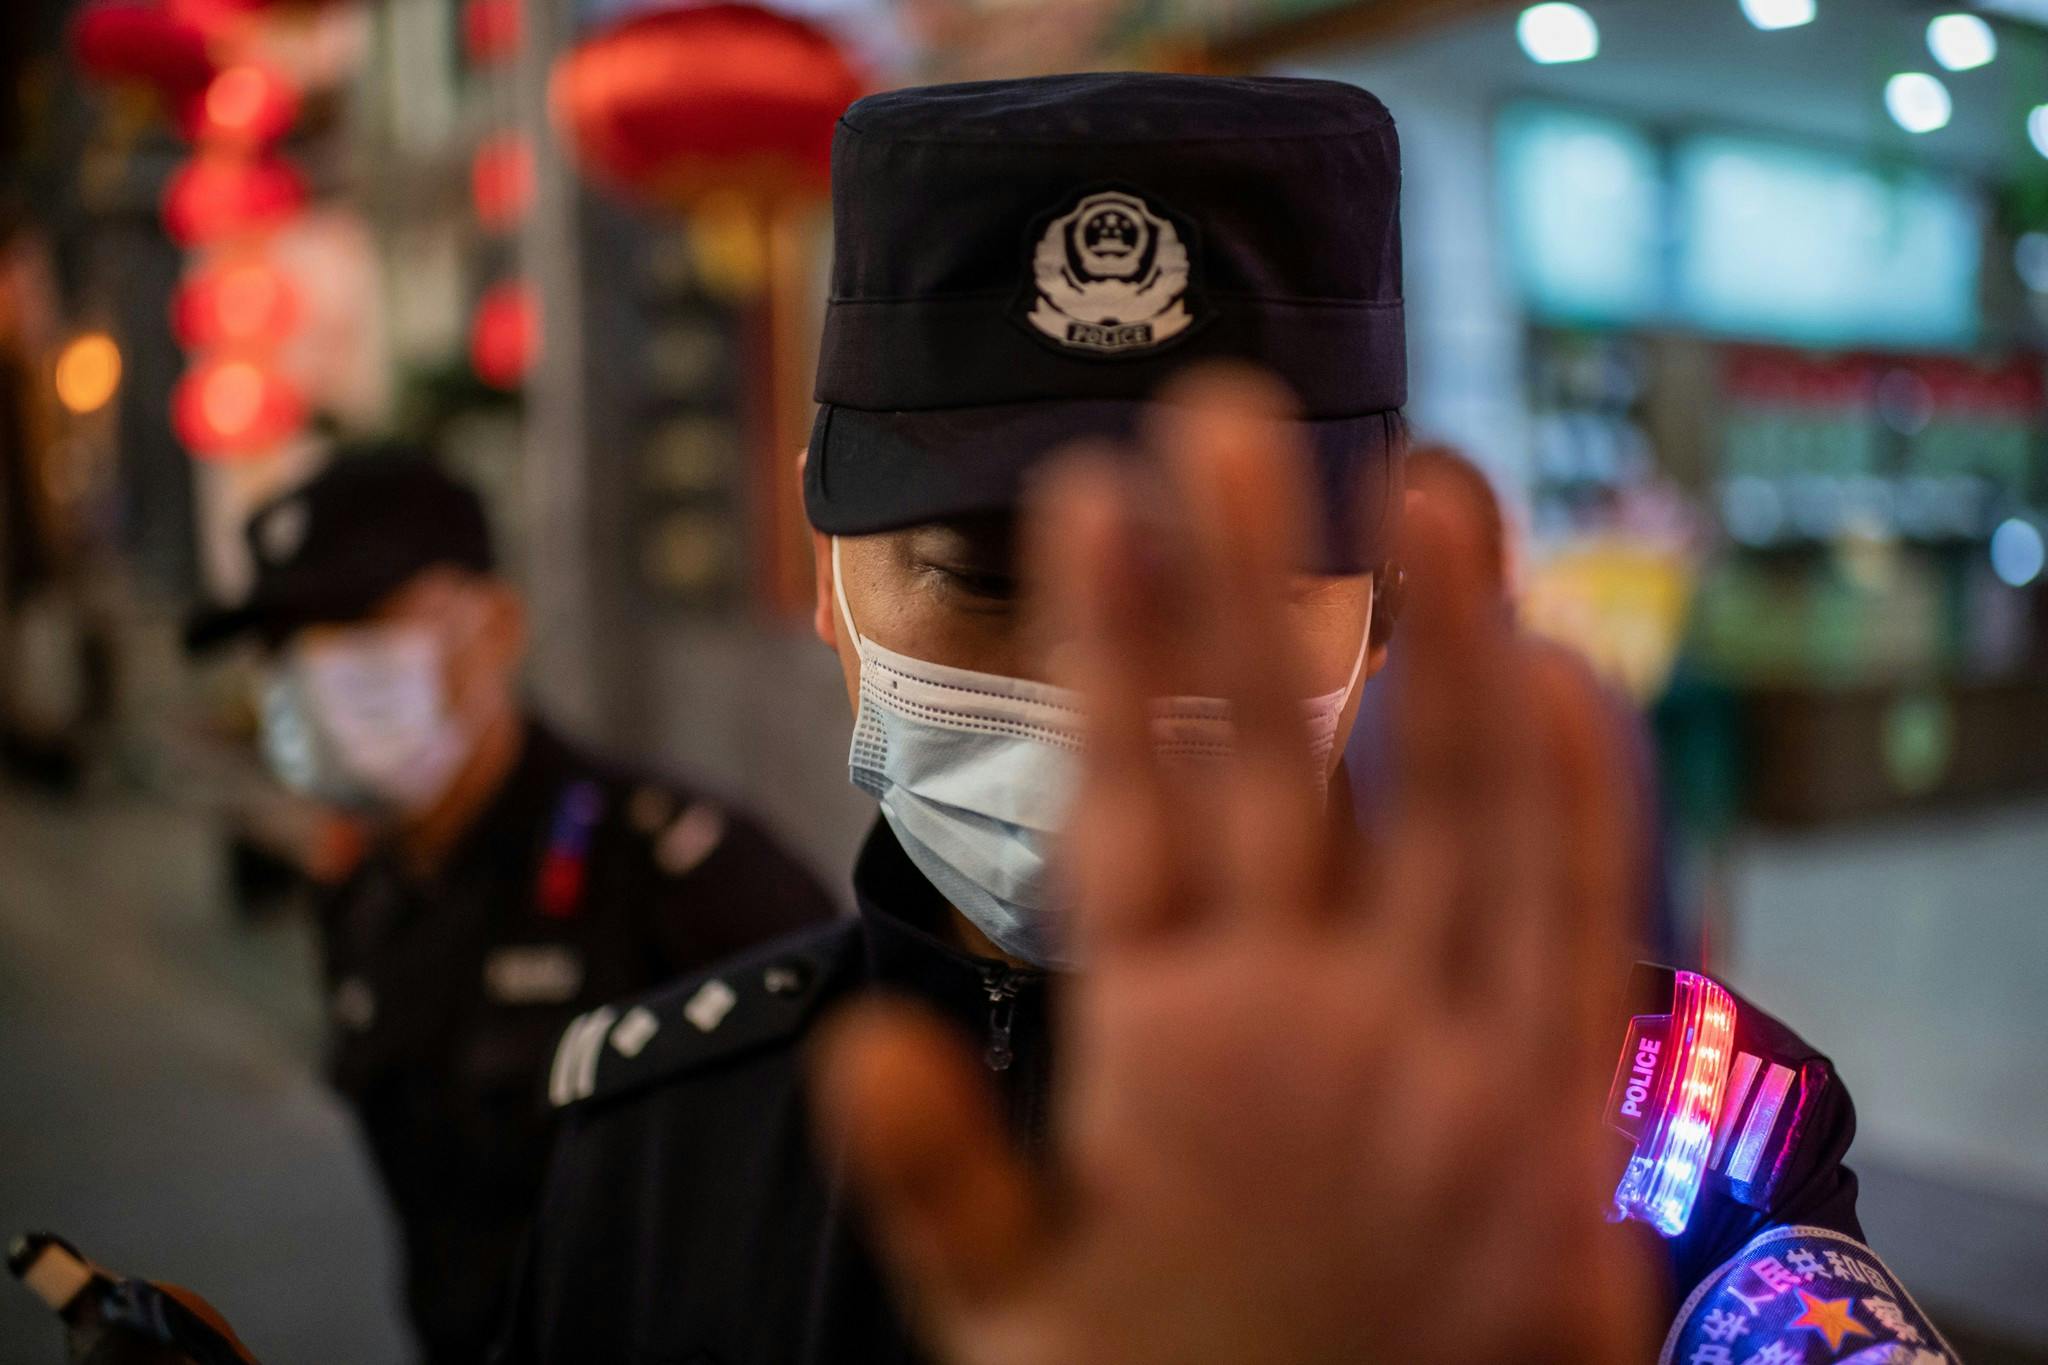 Un agent de police portant un masque facial par mesure de prévention contre le Covid-19 (nouveau coronavirus) tente d'empêcher un photojournaliste de prendre des photos dans une rue à l'extérieur d'un complexe commercial à Pékin, le 13 octobre 2020.